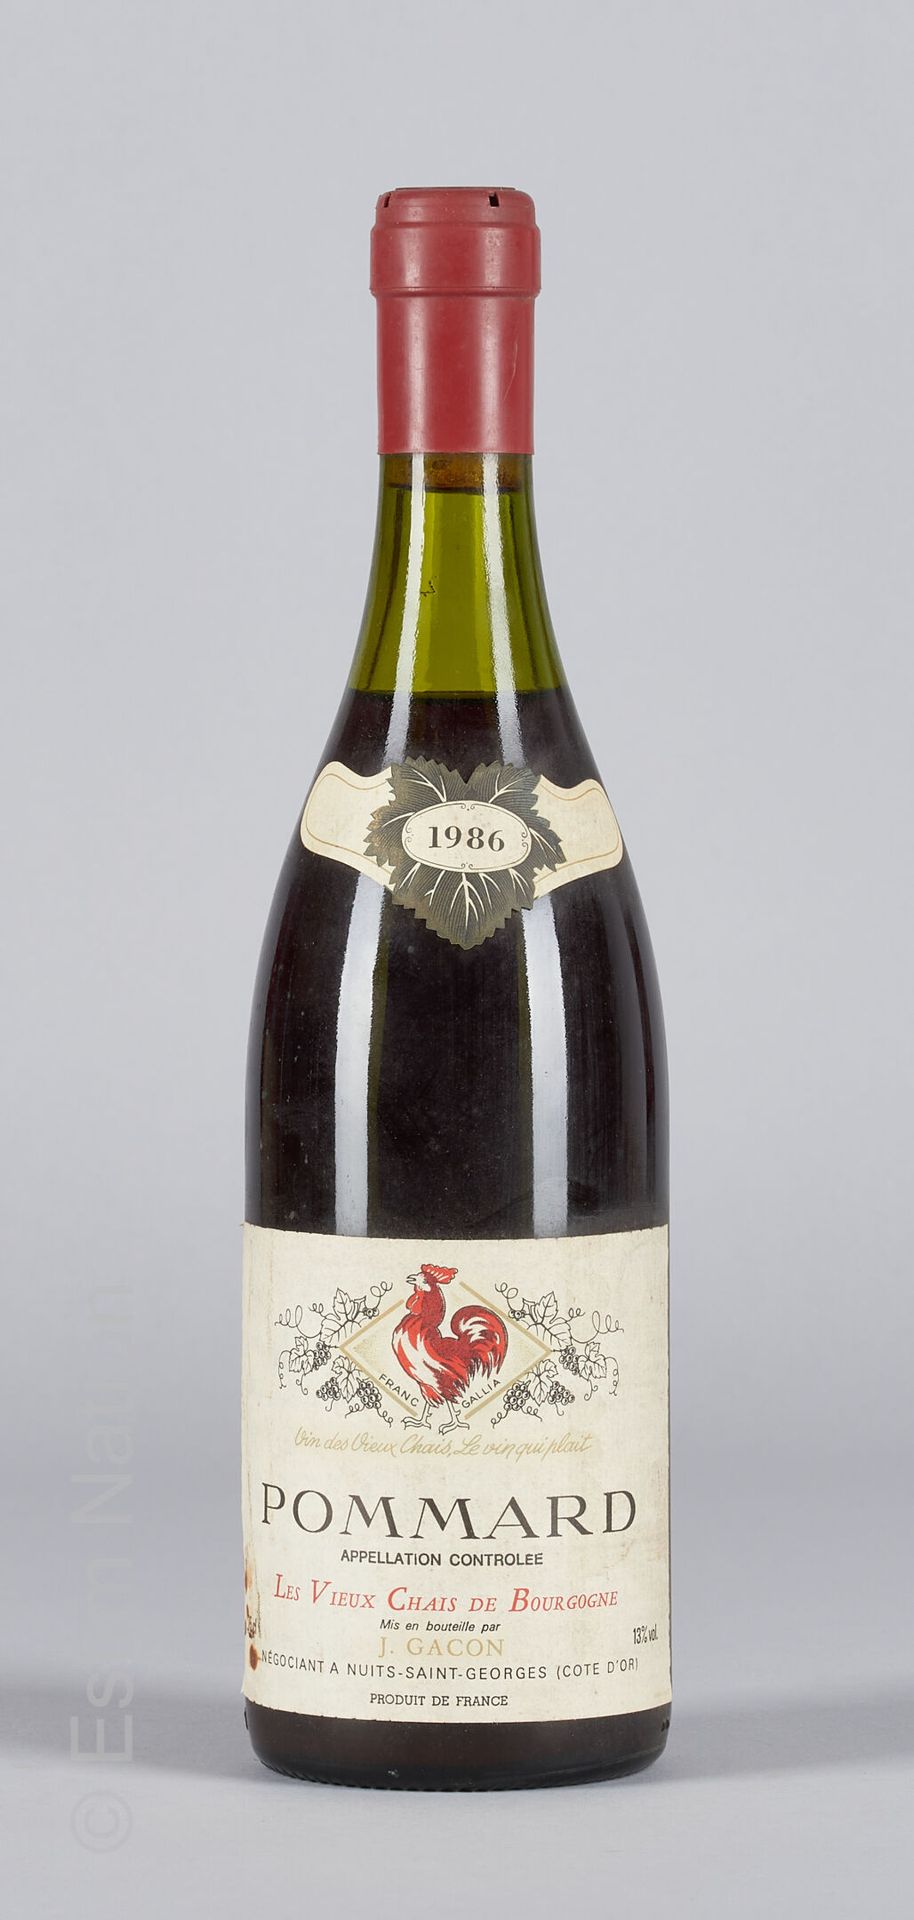 BOURGOGNE 1 botella de Pommard 1986 Les vieux chais de Bourgogne J. Gacon

(N. E&hellip;